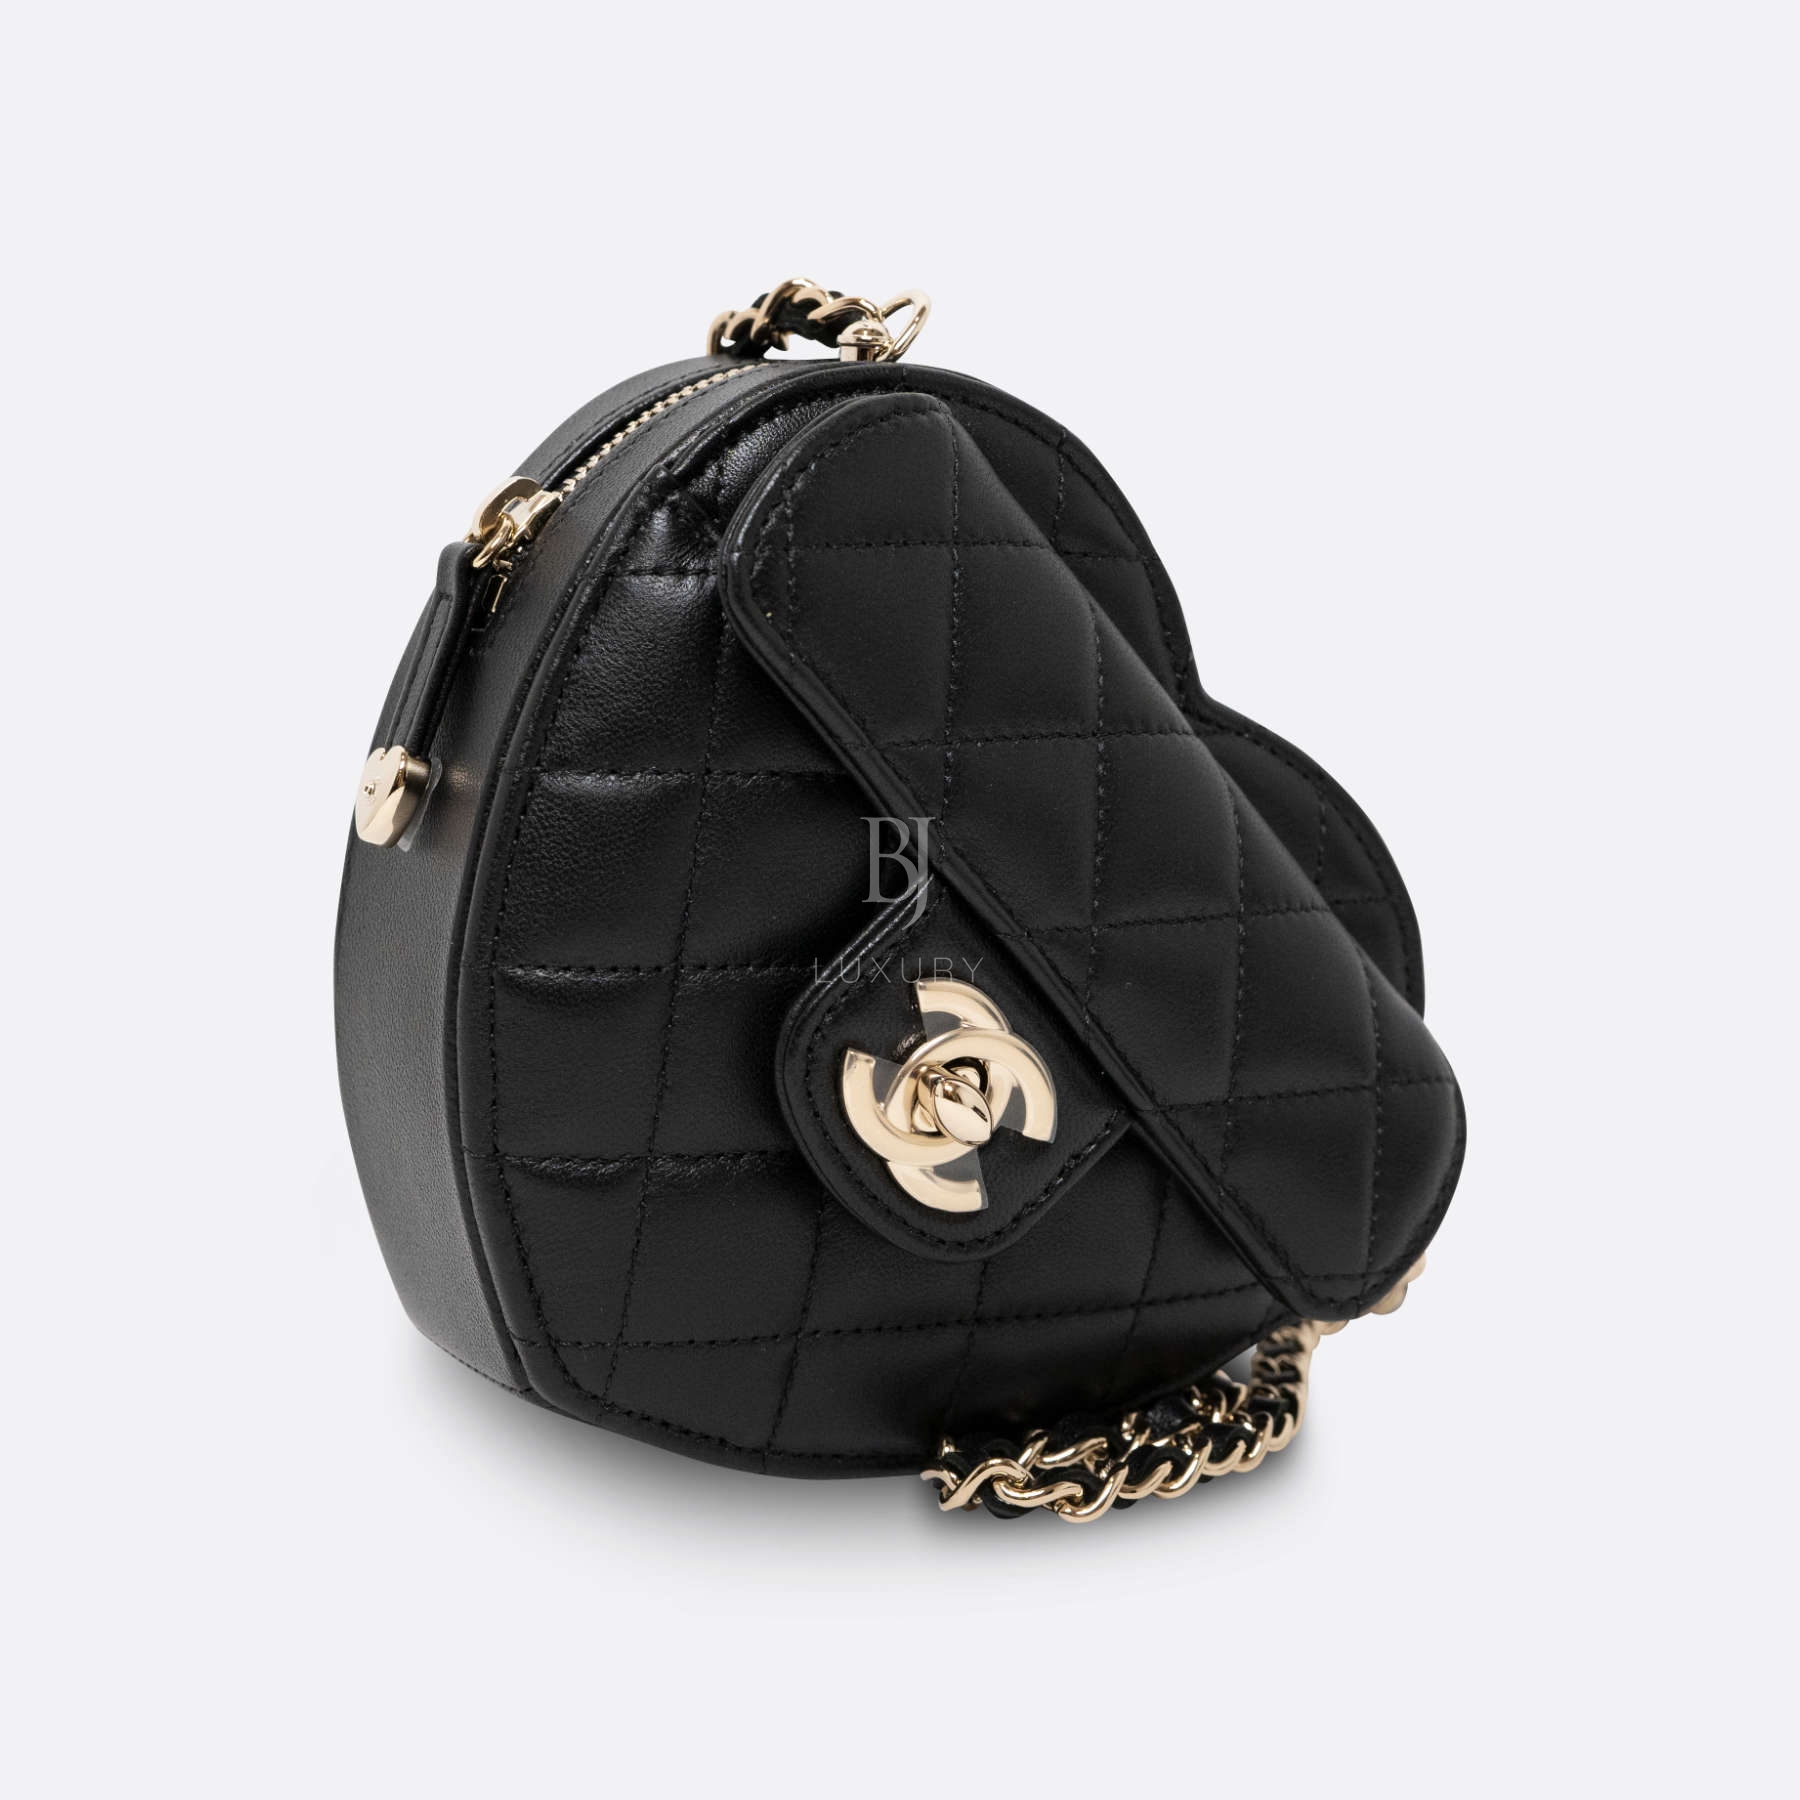 CHANEL HEART BAG SMALL BLACK LAMBSKIN - BJ Luxury